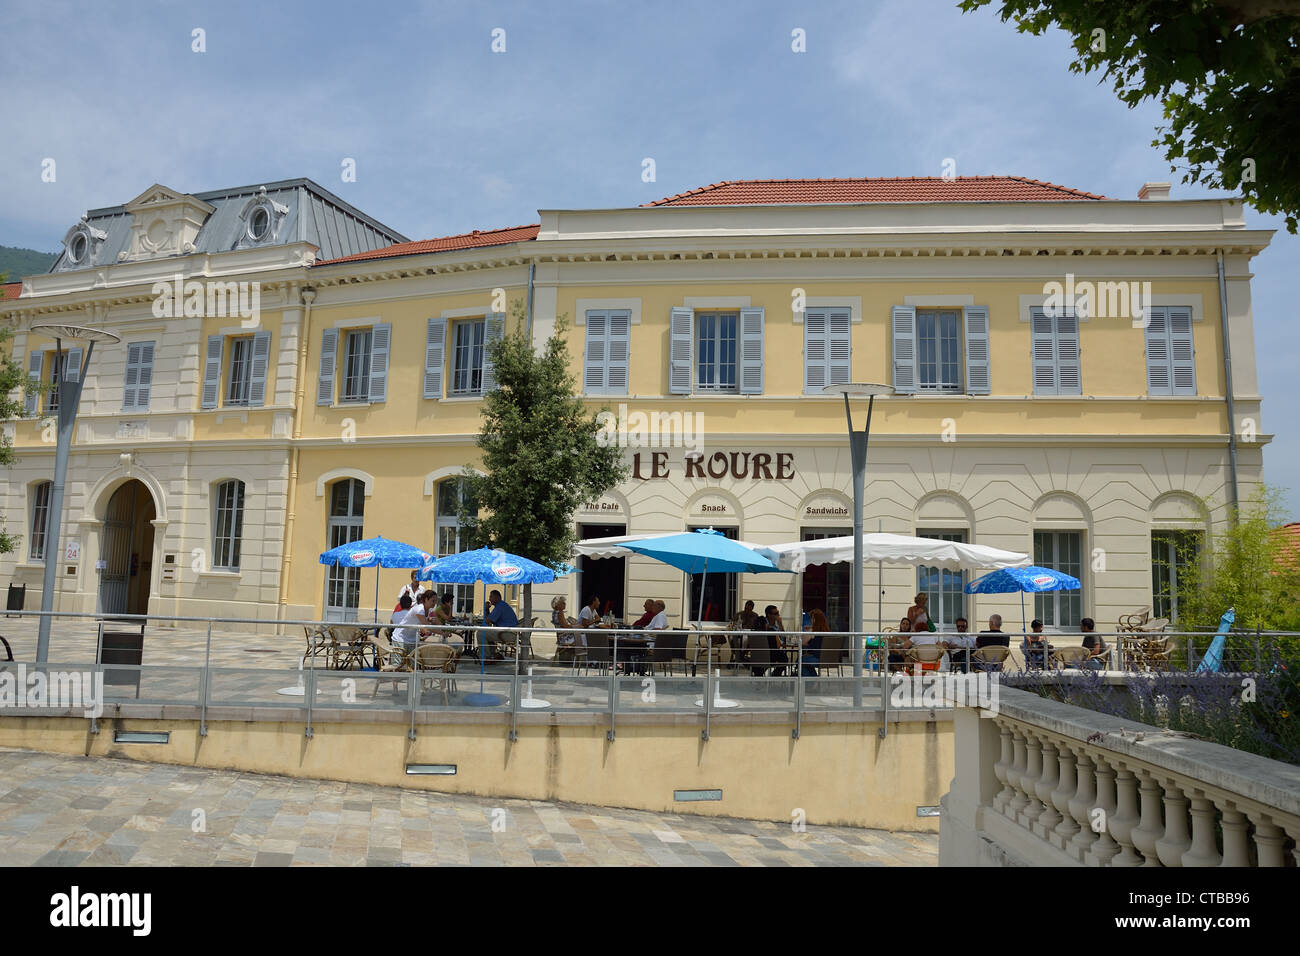 Le Roure Brasserie, Avenue Pierre Semard, Grasse, Côte d'Azur, Alpes-Maritimes, Provence-Alpes-Côte d'Azur, France Banque D'Images